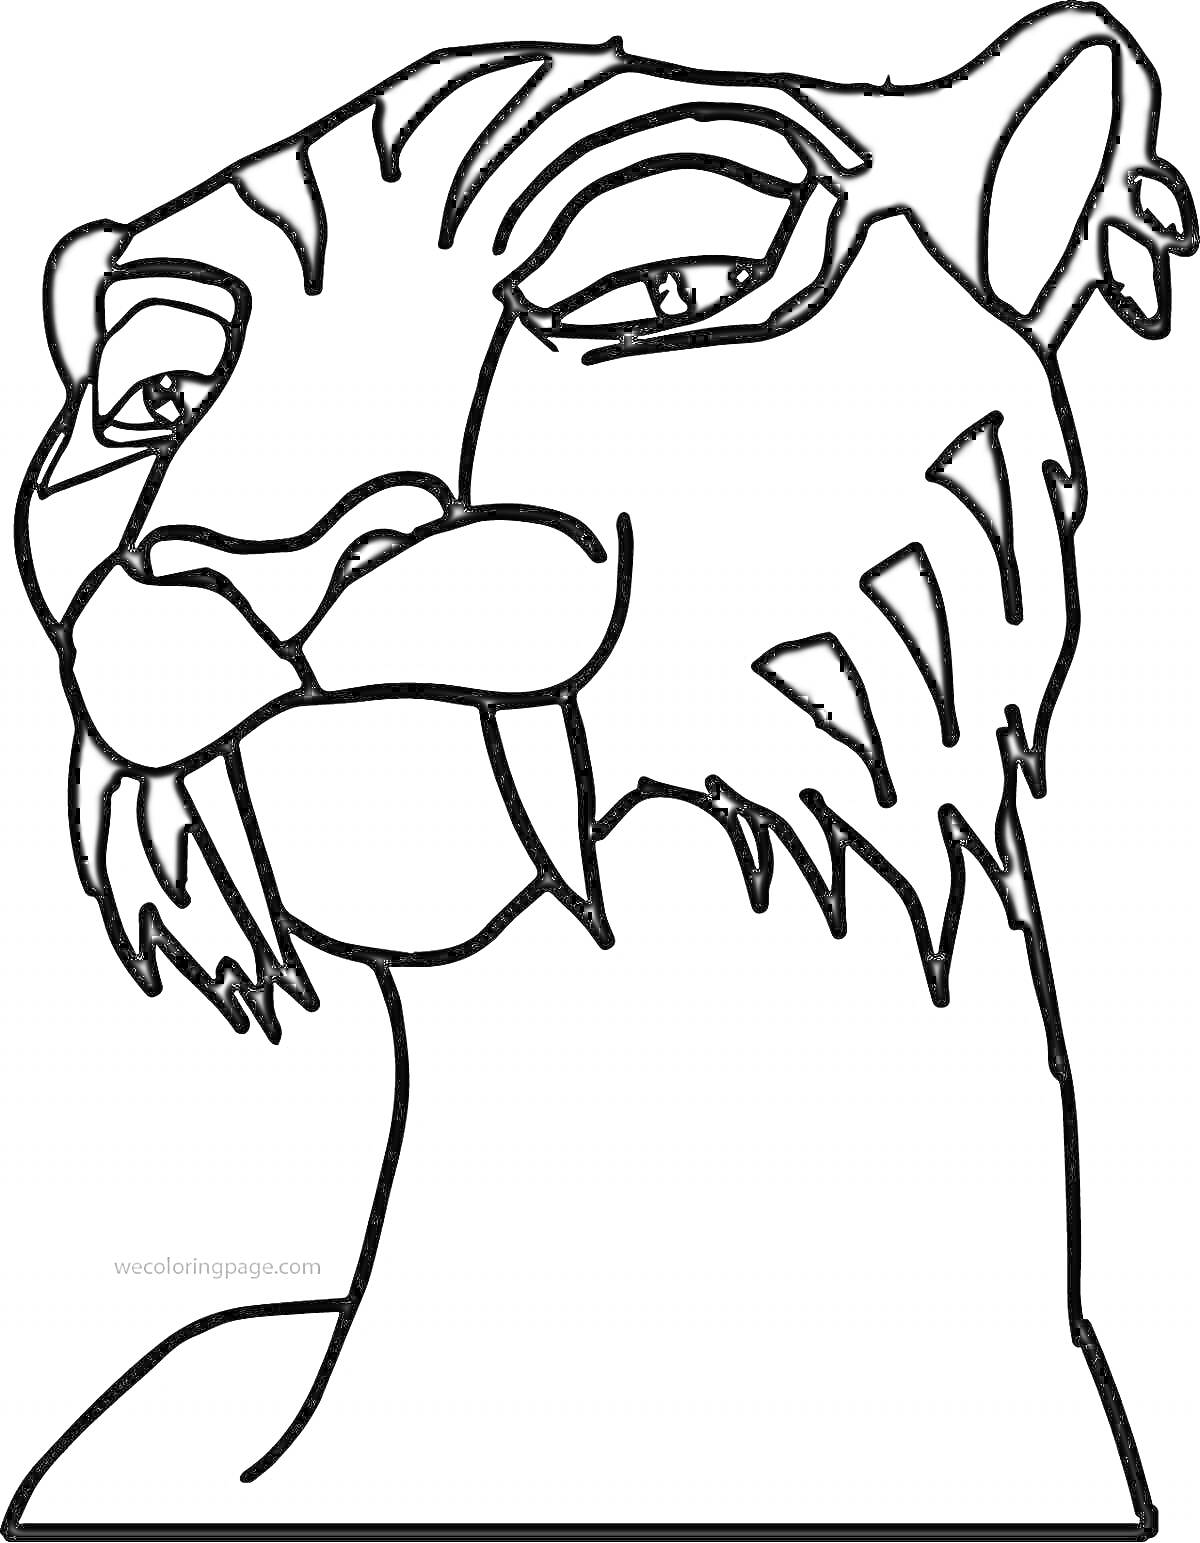 Раскраска Саблезубый тигр крупным планом с закрытым ртом